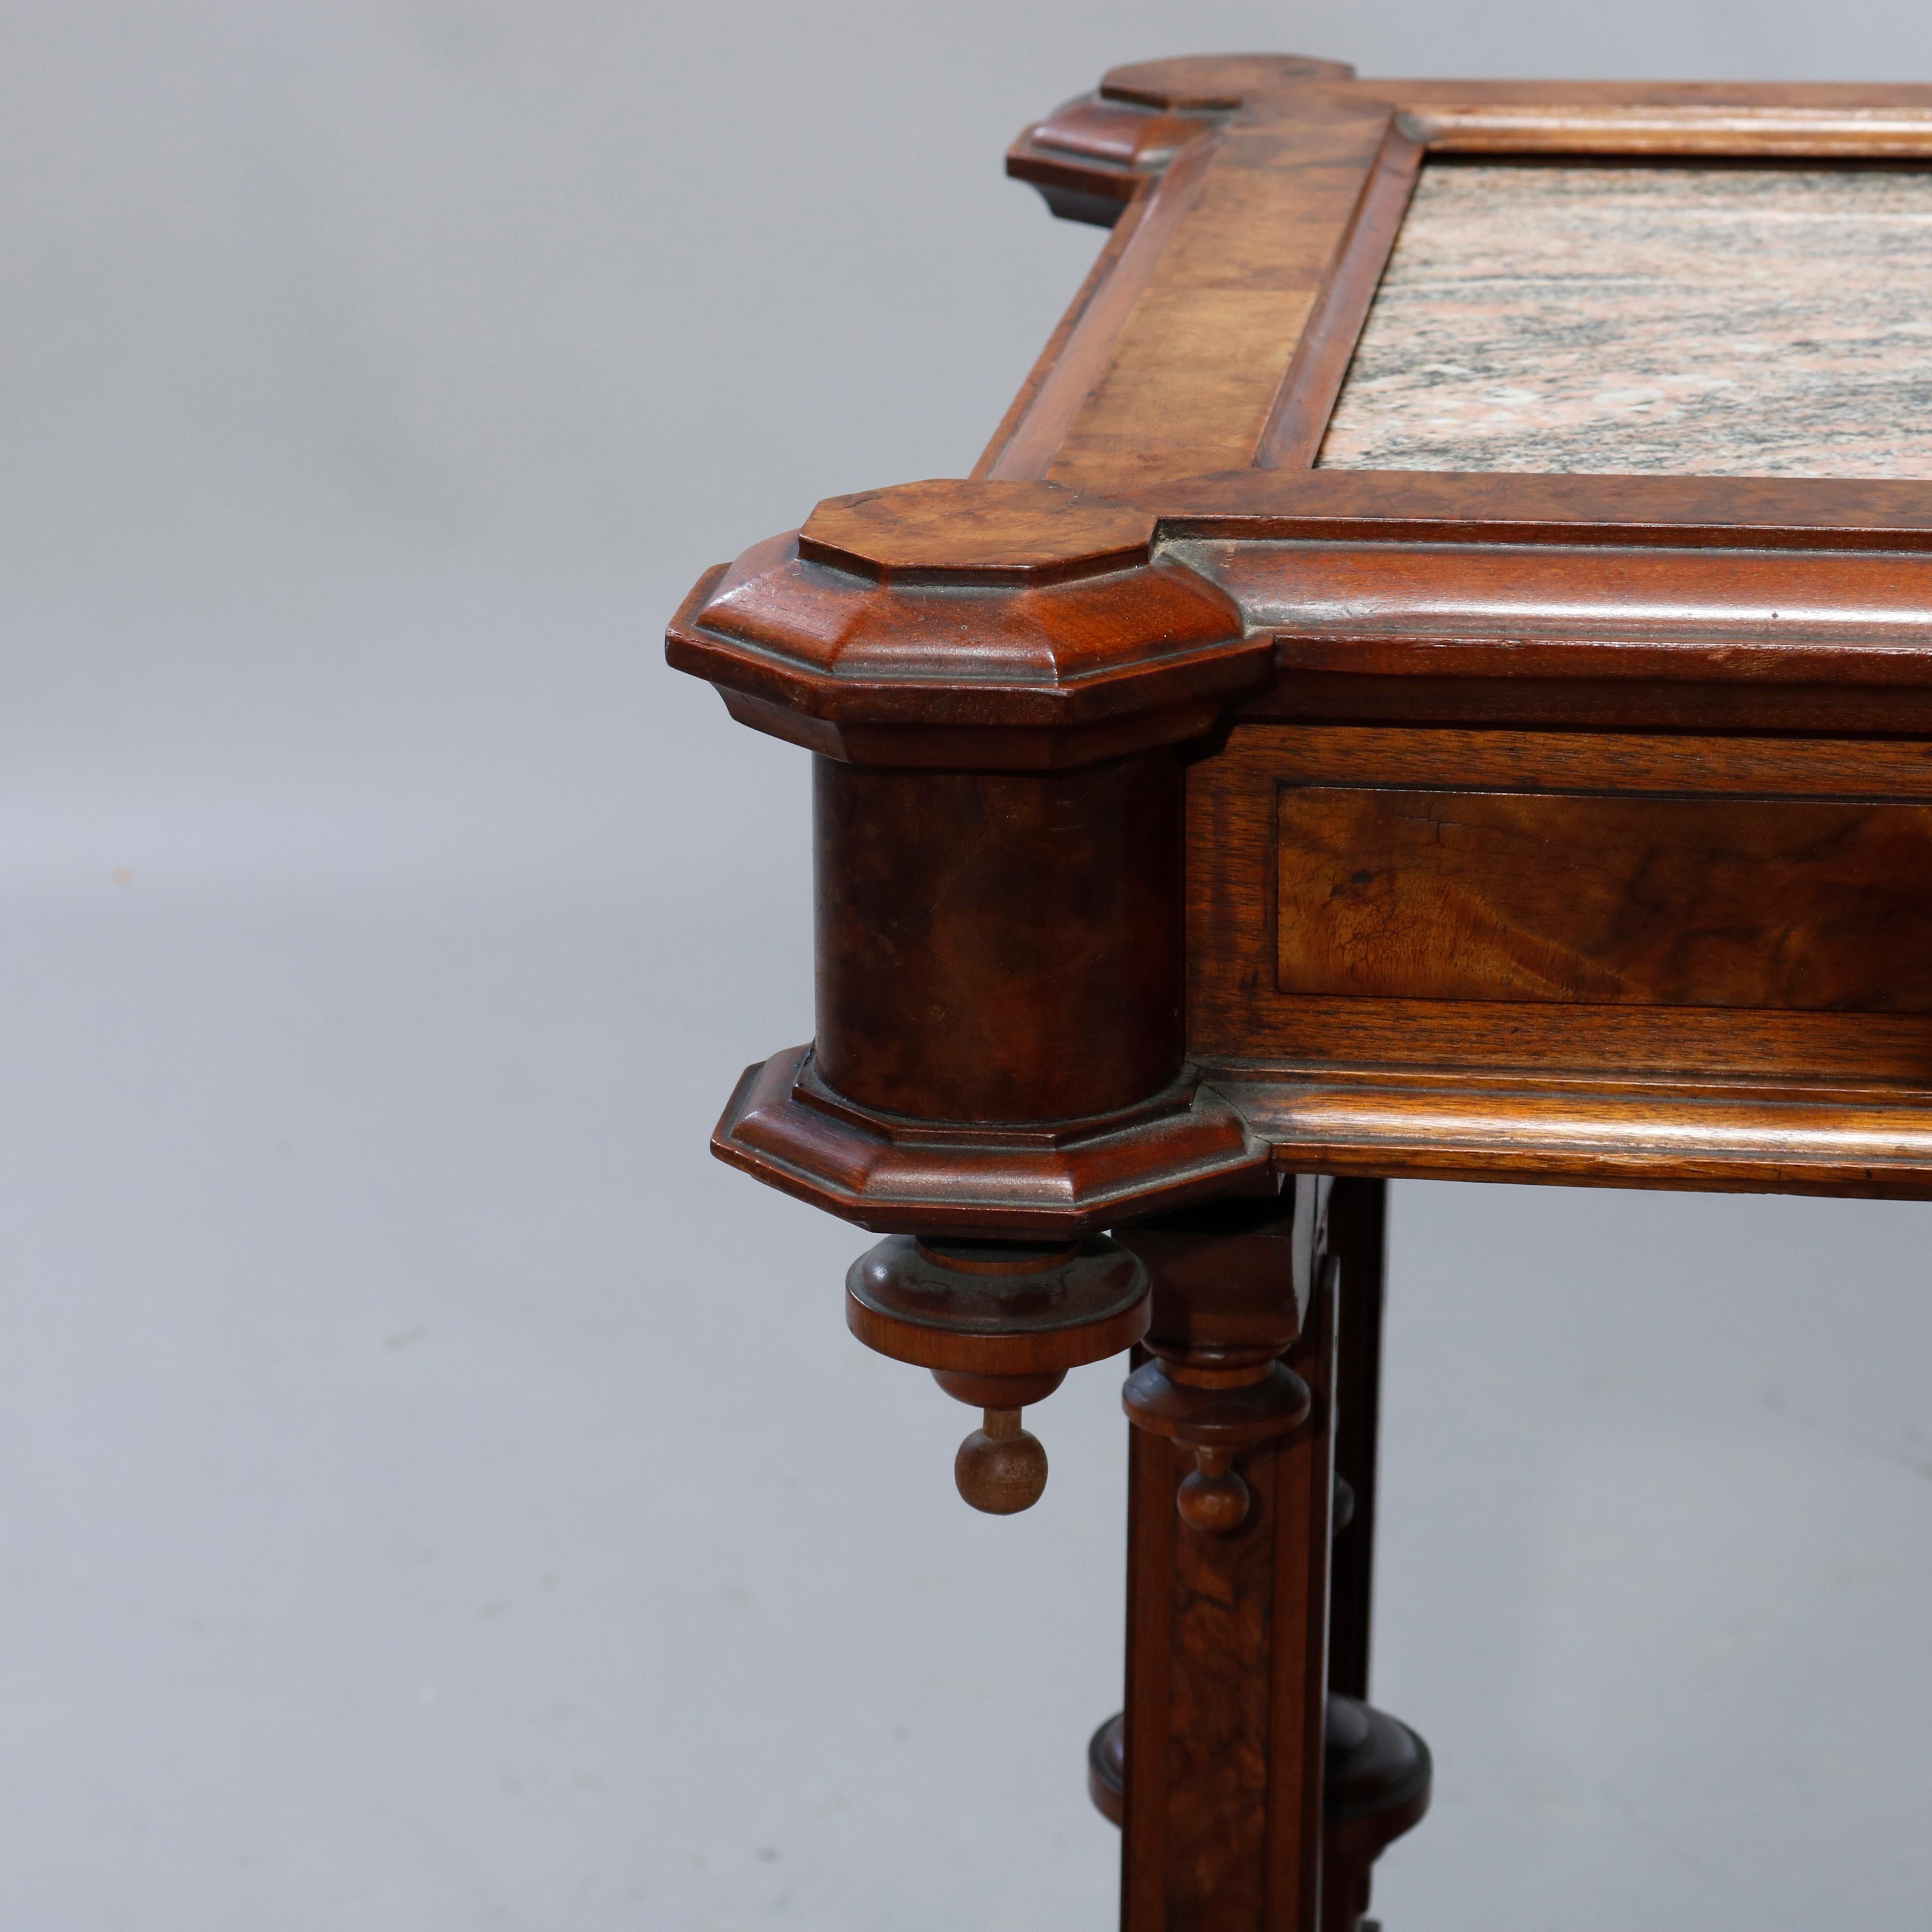 American Antique Renaissance Revival Walnut, Burl & Rouge Marble Parlor Table, c1890